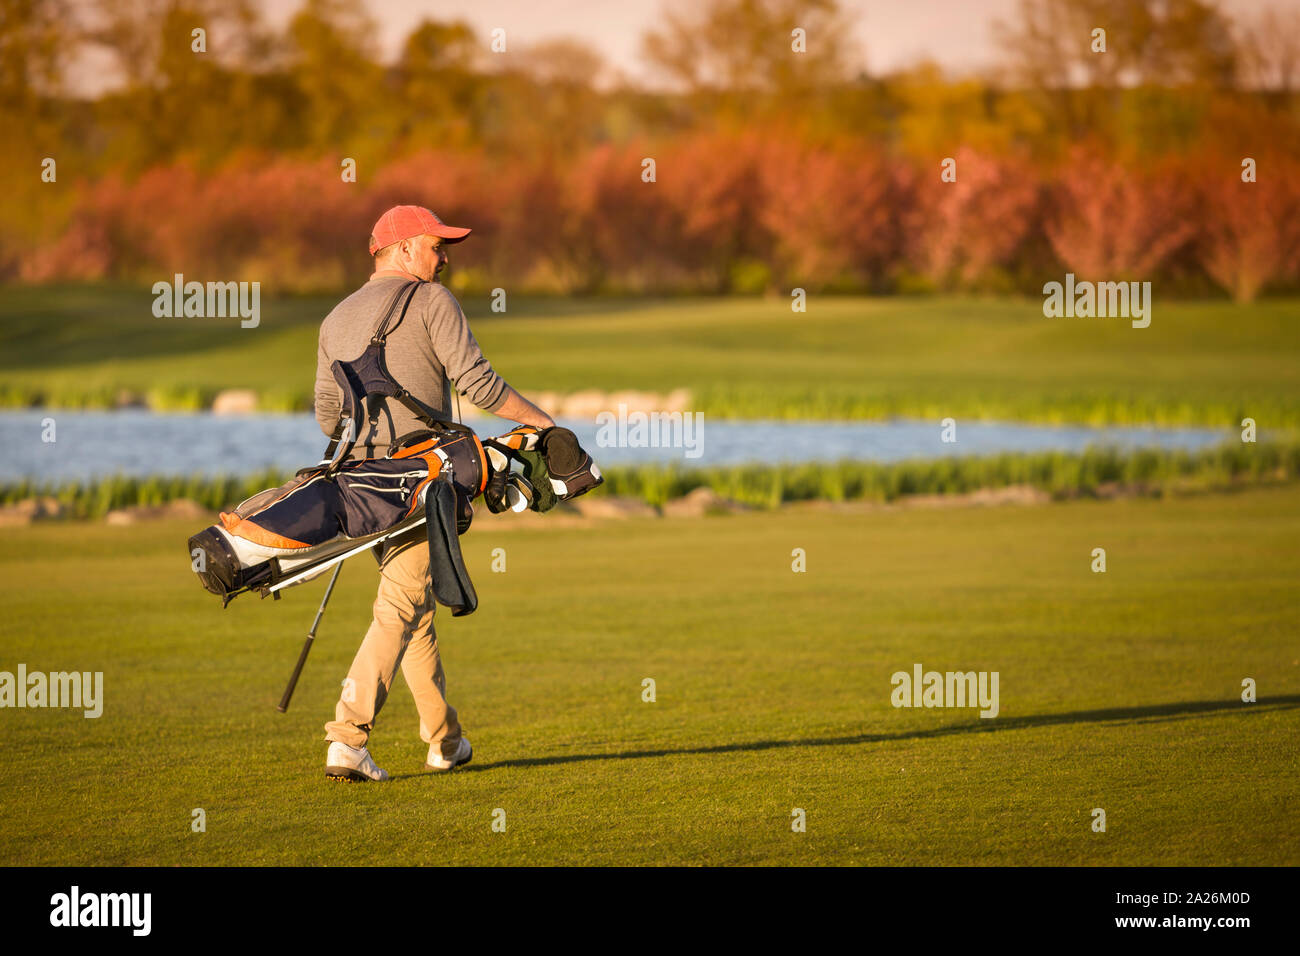 Golfspieler gehen auf faiway. Stockfoto